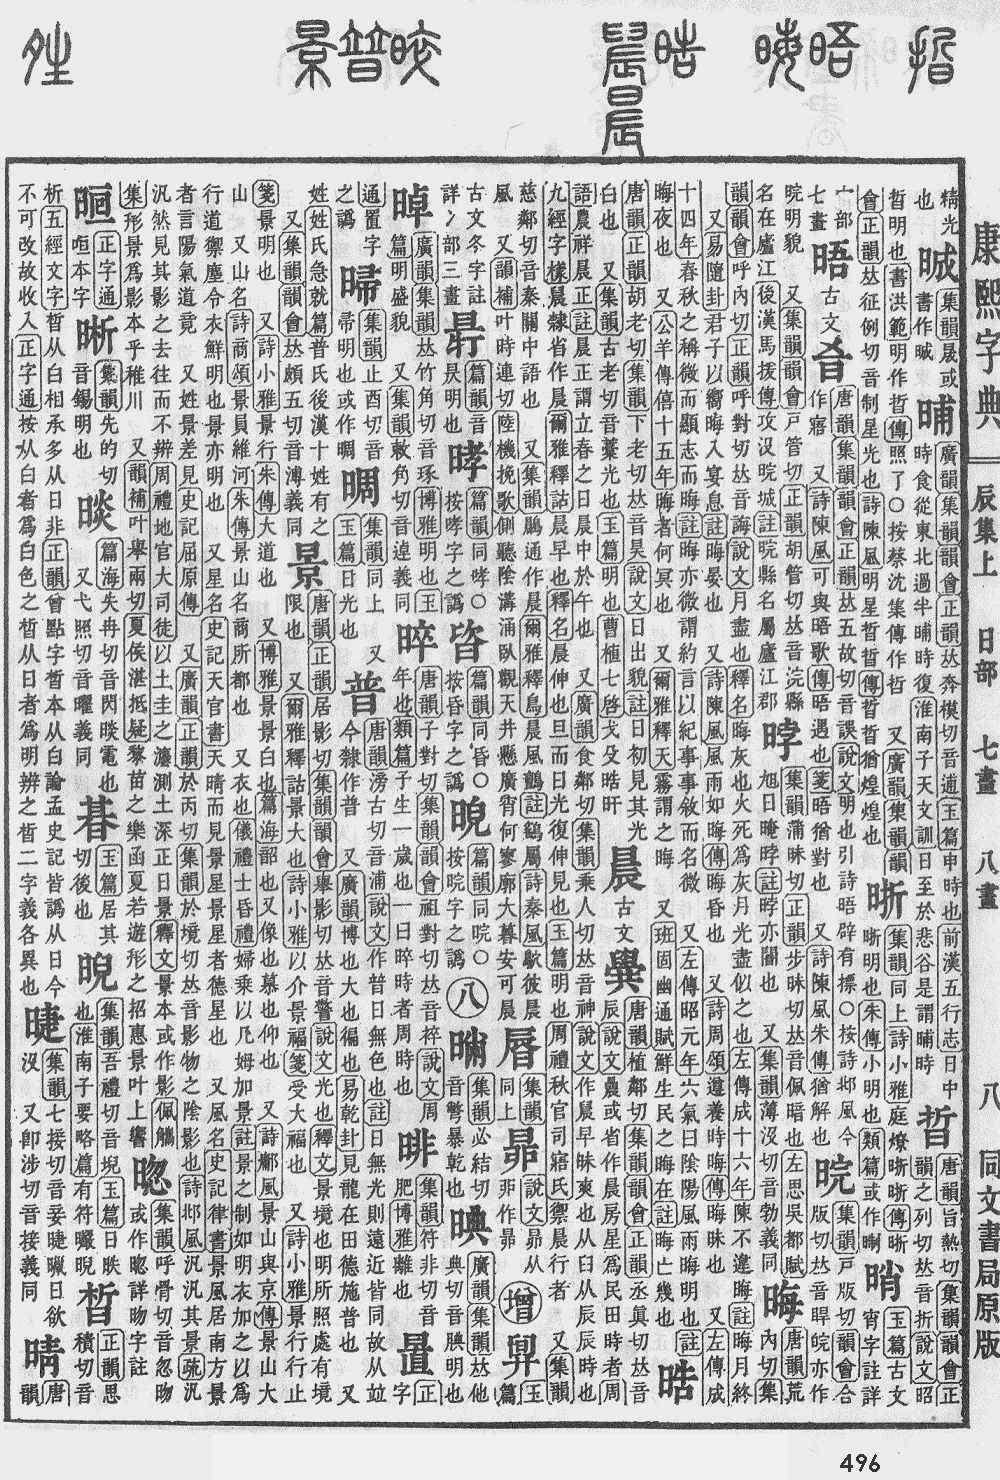 起名结果详情 - 许泰来(胡方,男,1975-03-09 00:00)